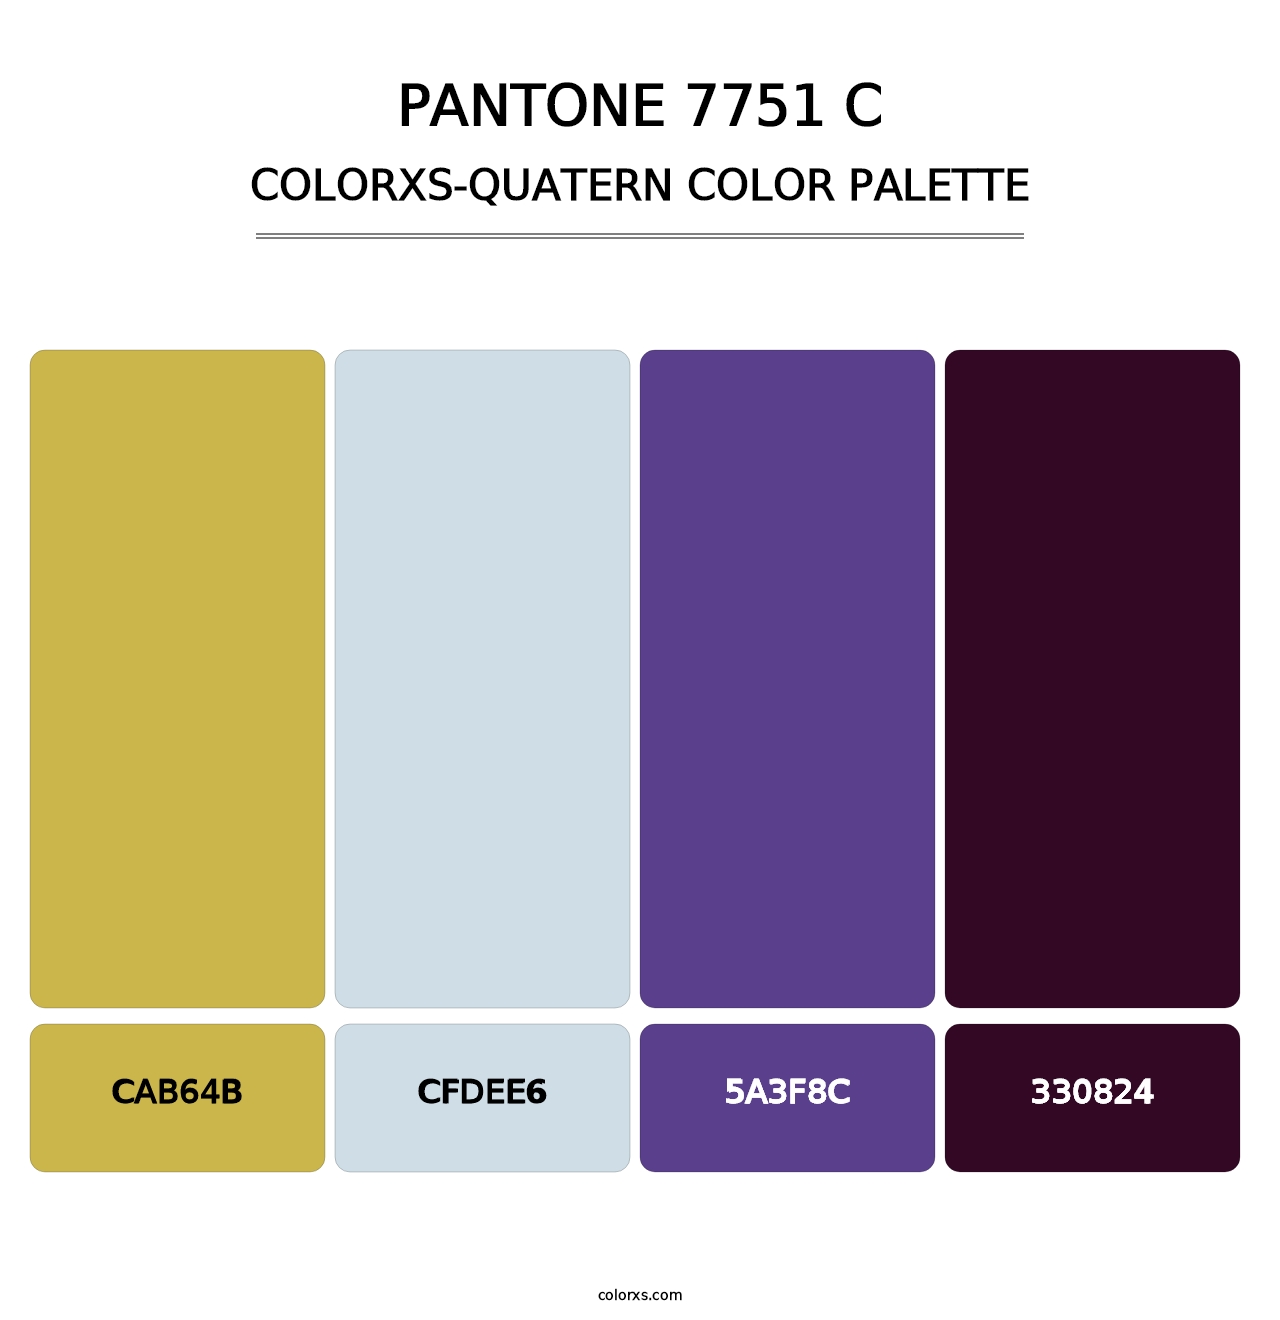 PANTONE 7751 C - Colorxs Quatern Palette